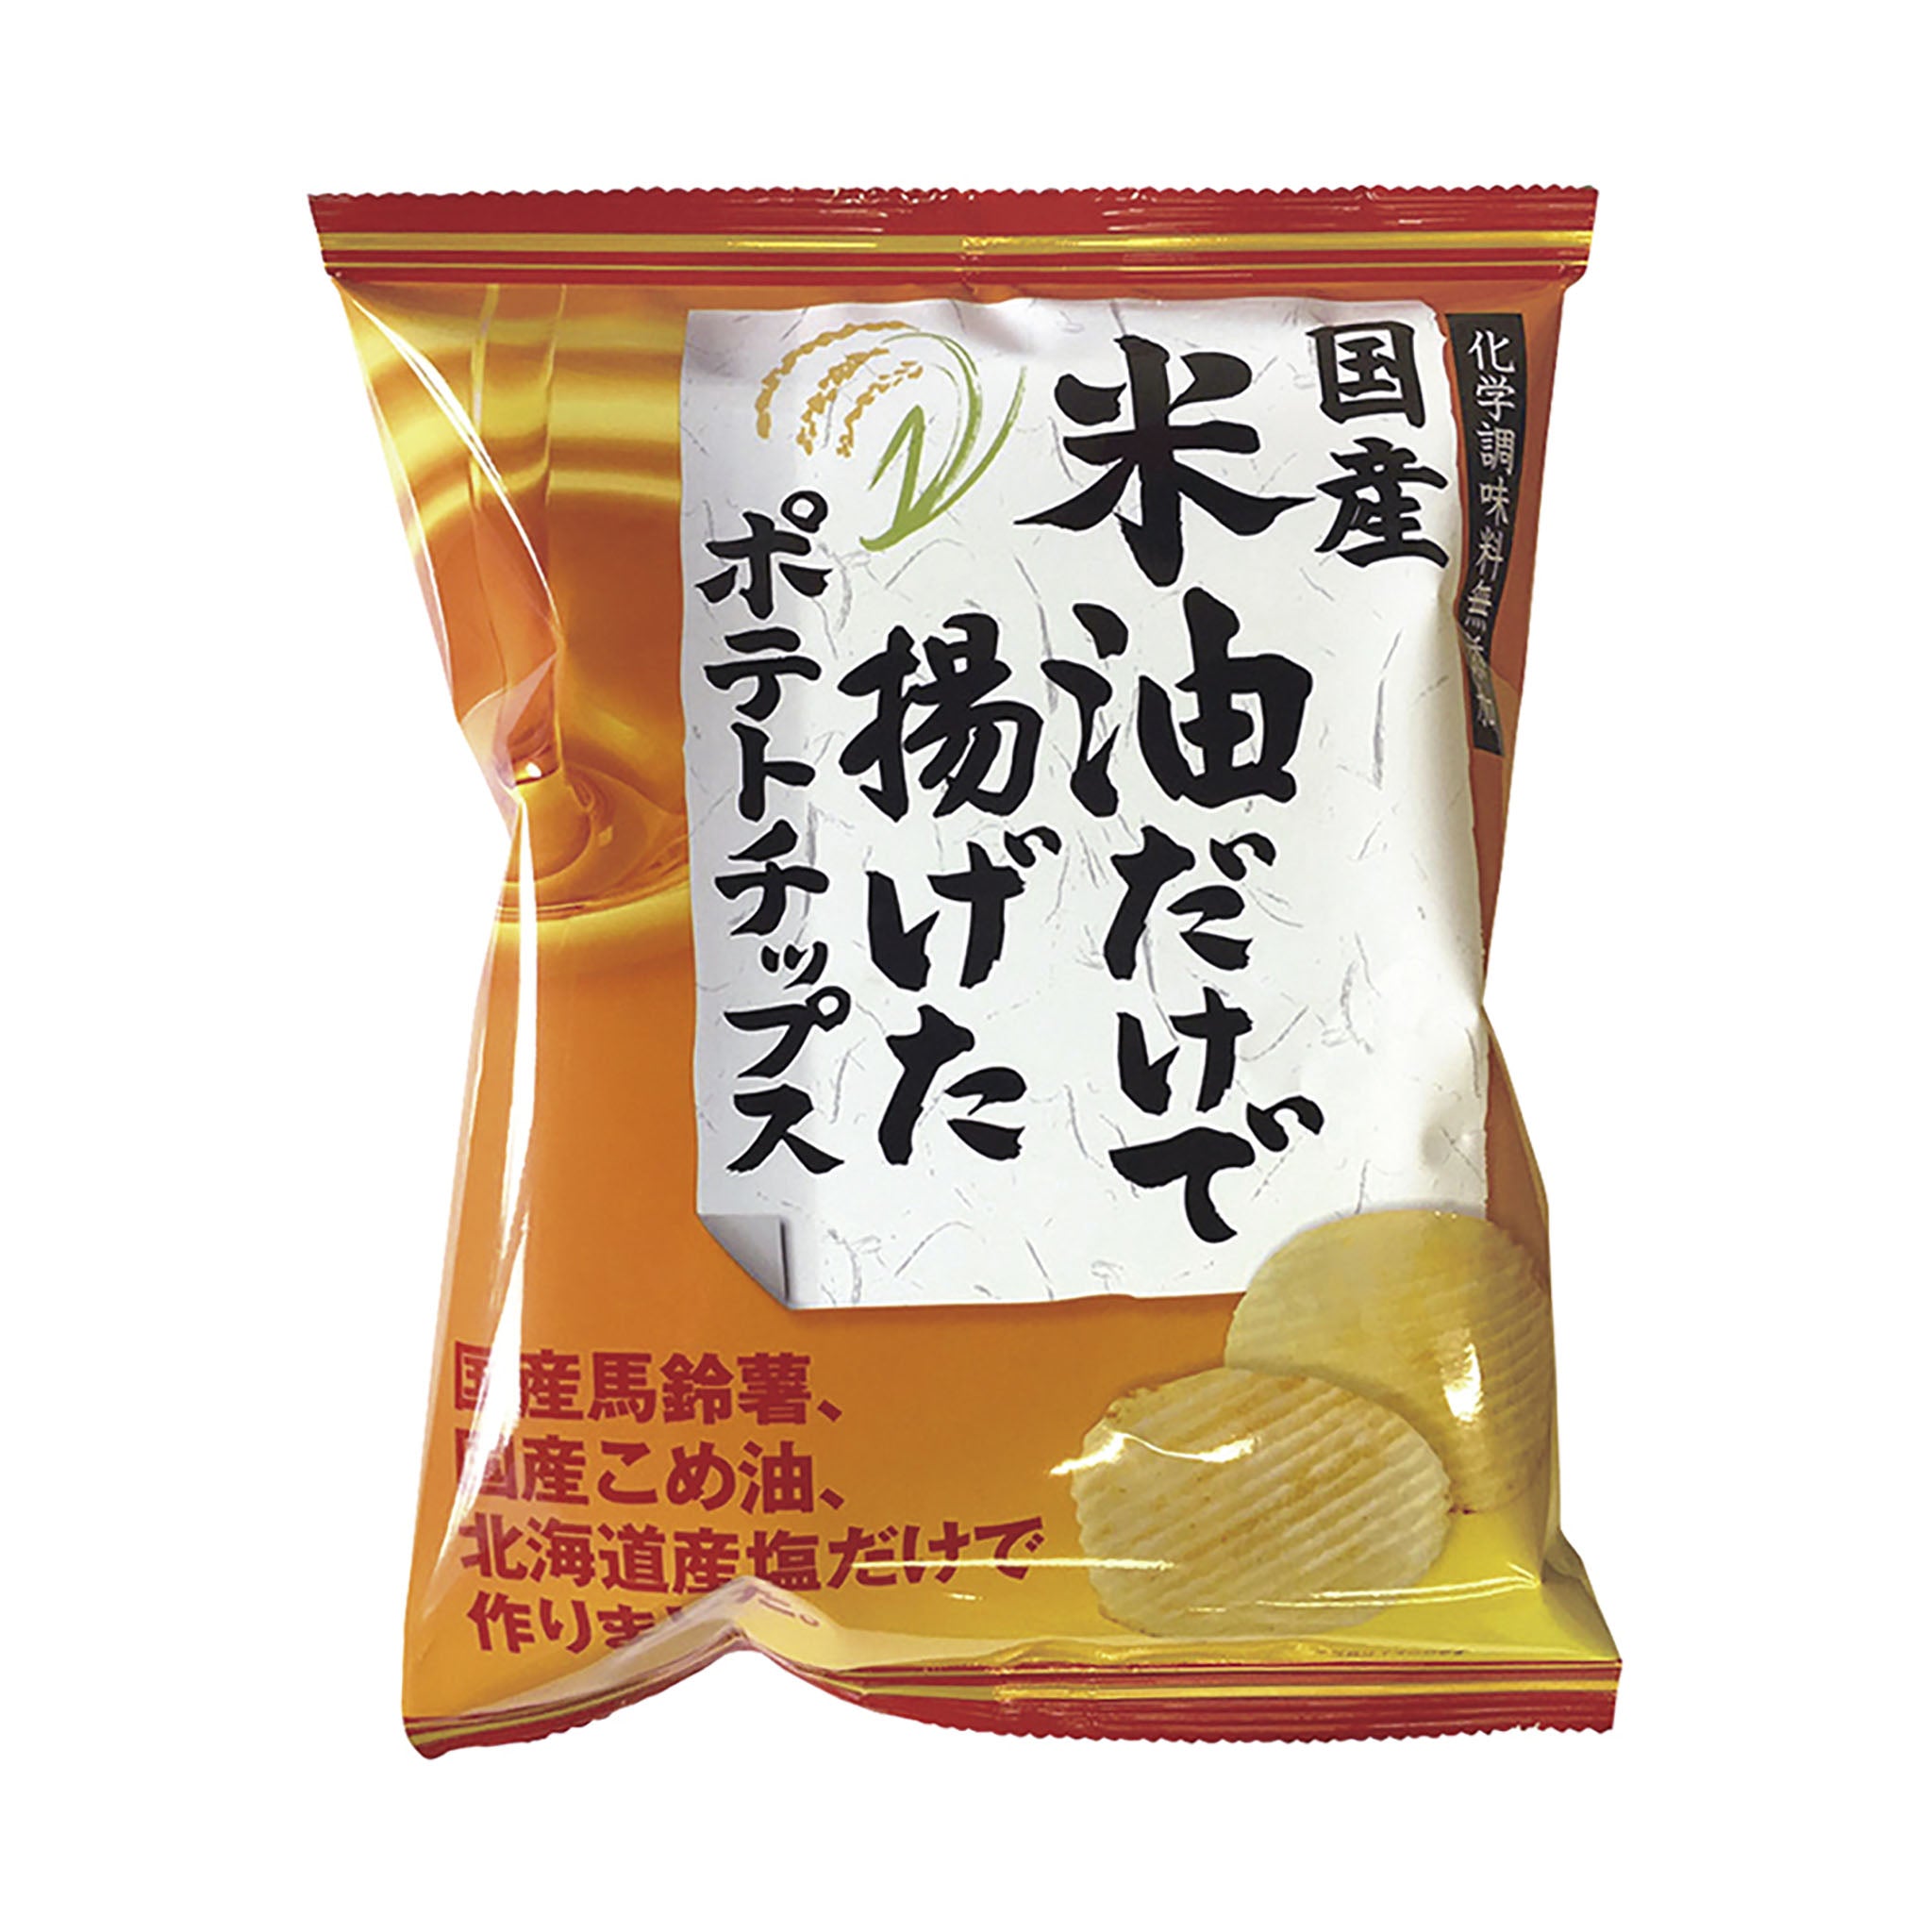 創健社 ポテトチップス うす塩味 60g - スナック菓子